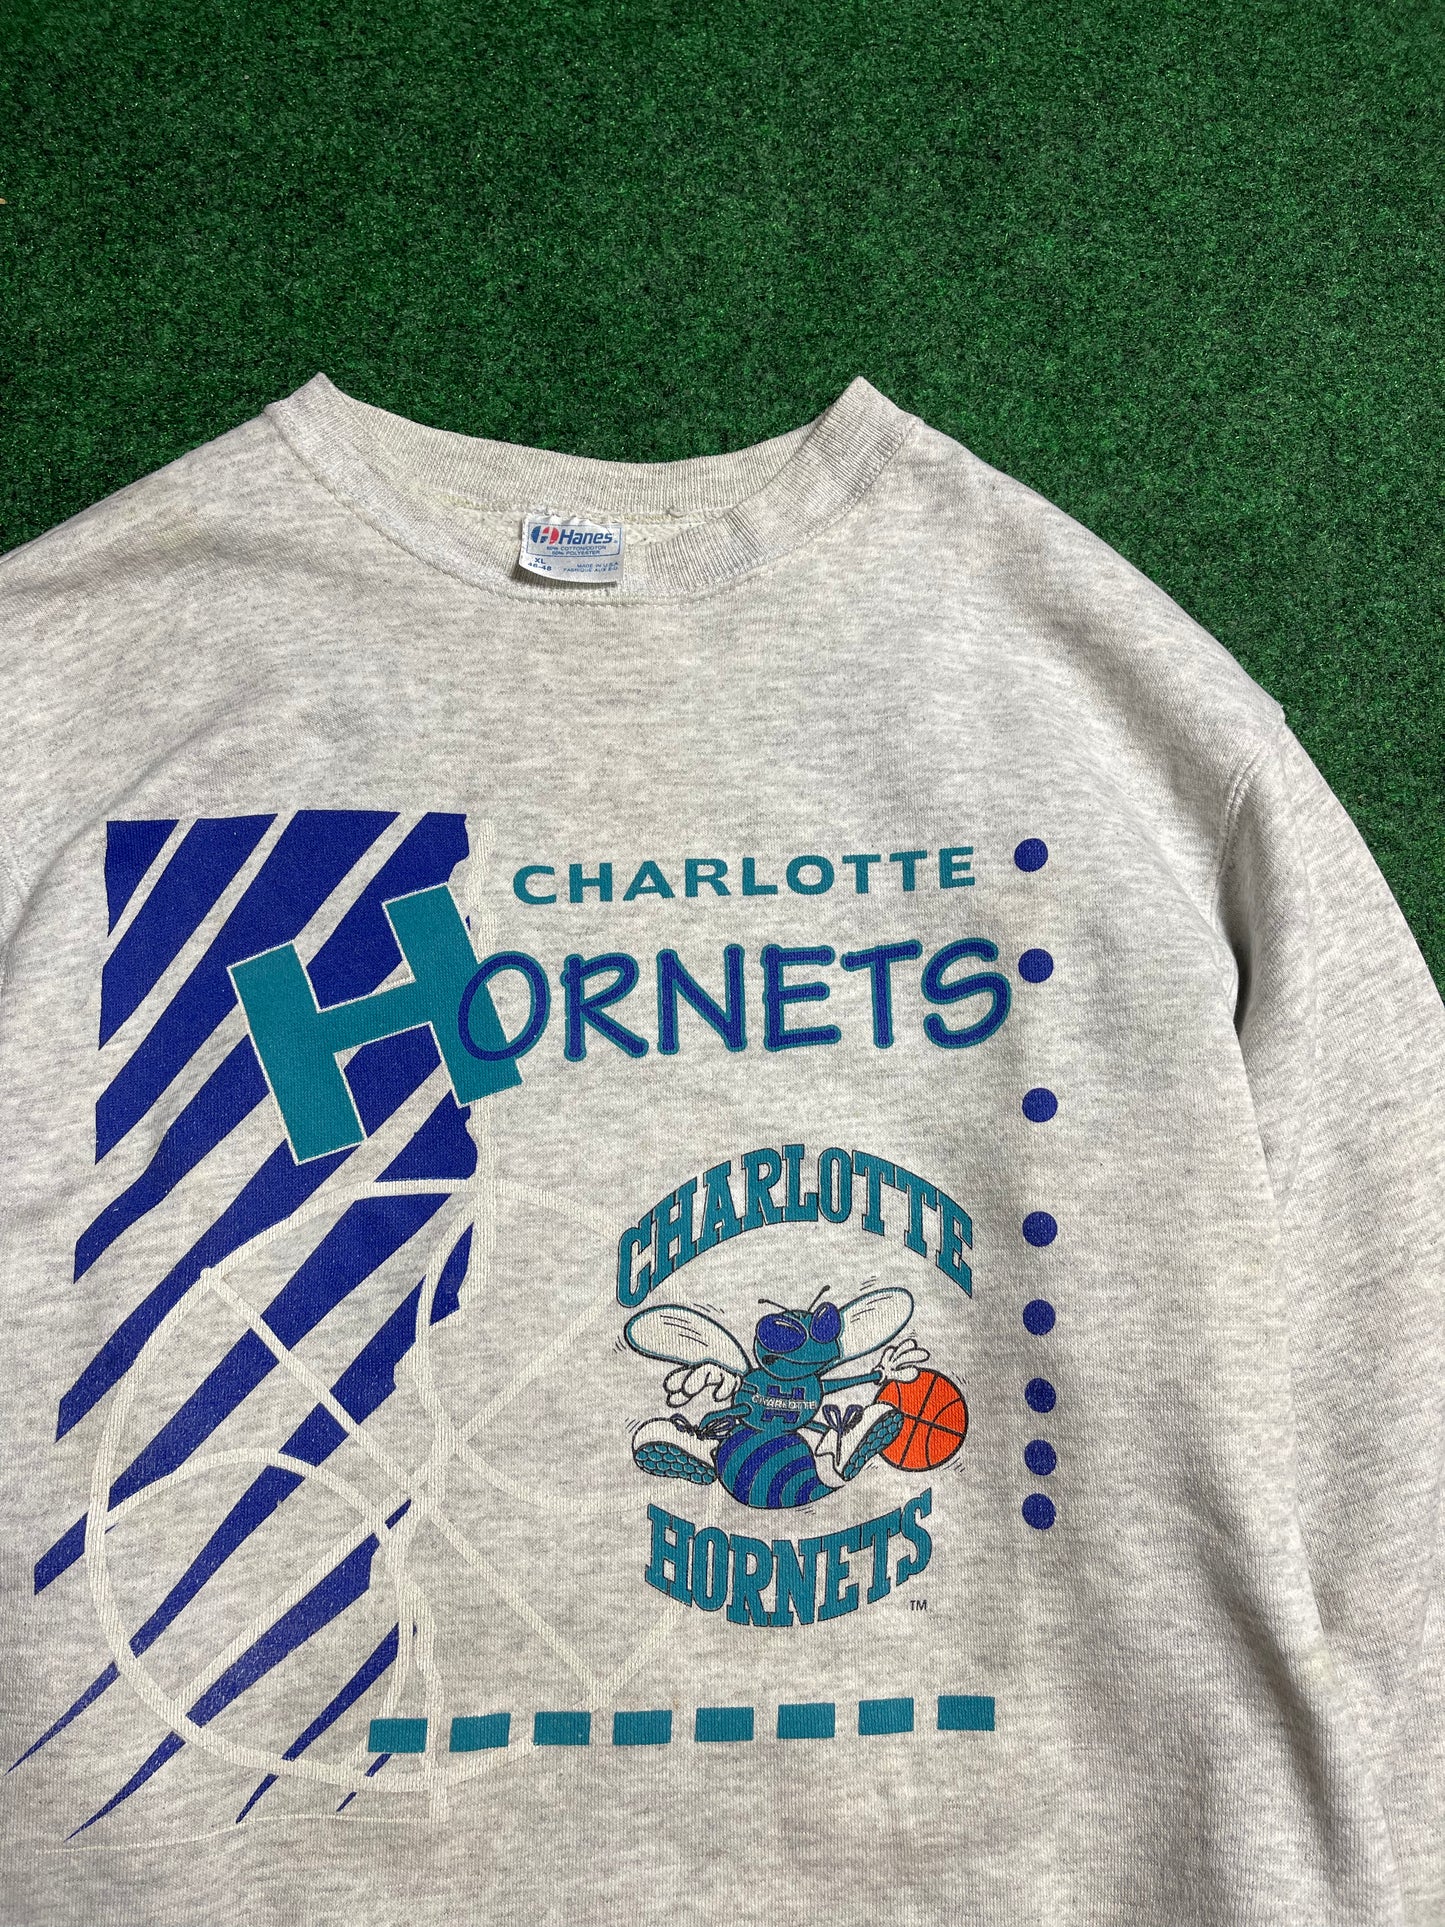 90’s Charlotte Hornets Vintage NBA Crewneck (Large)